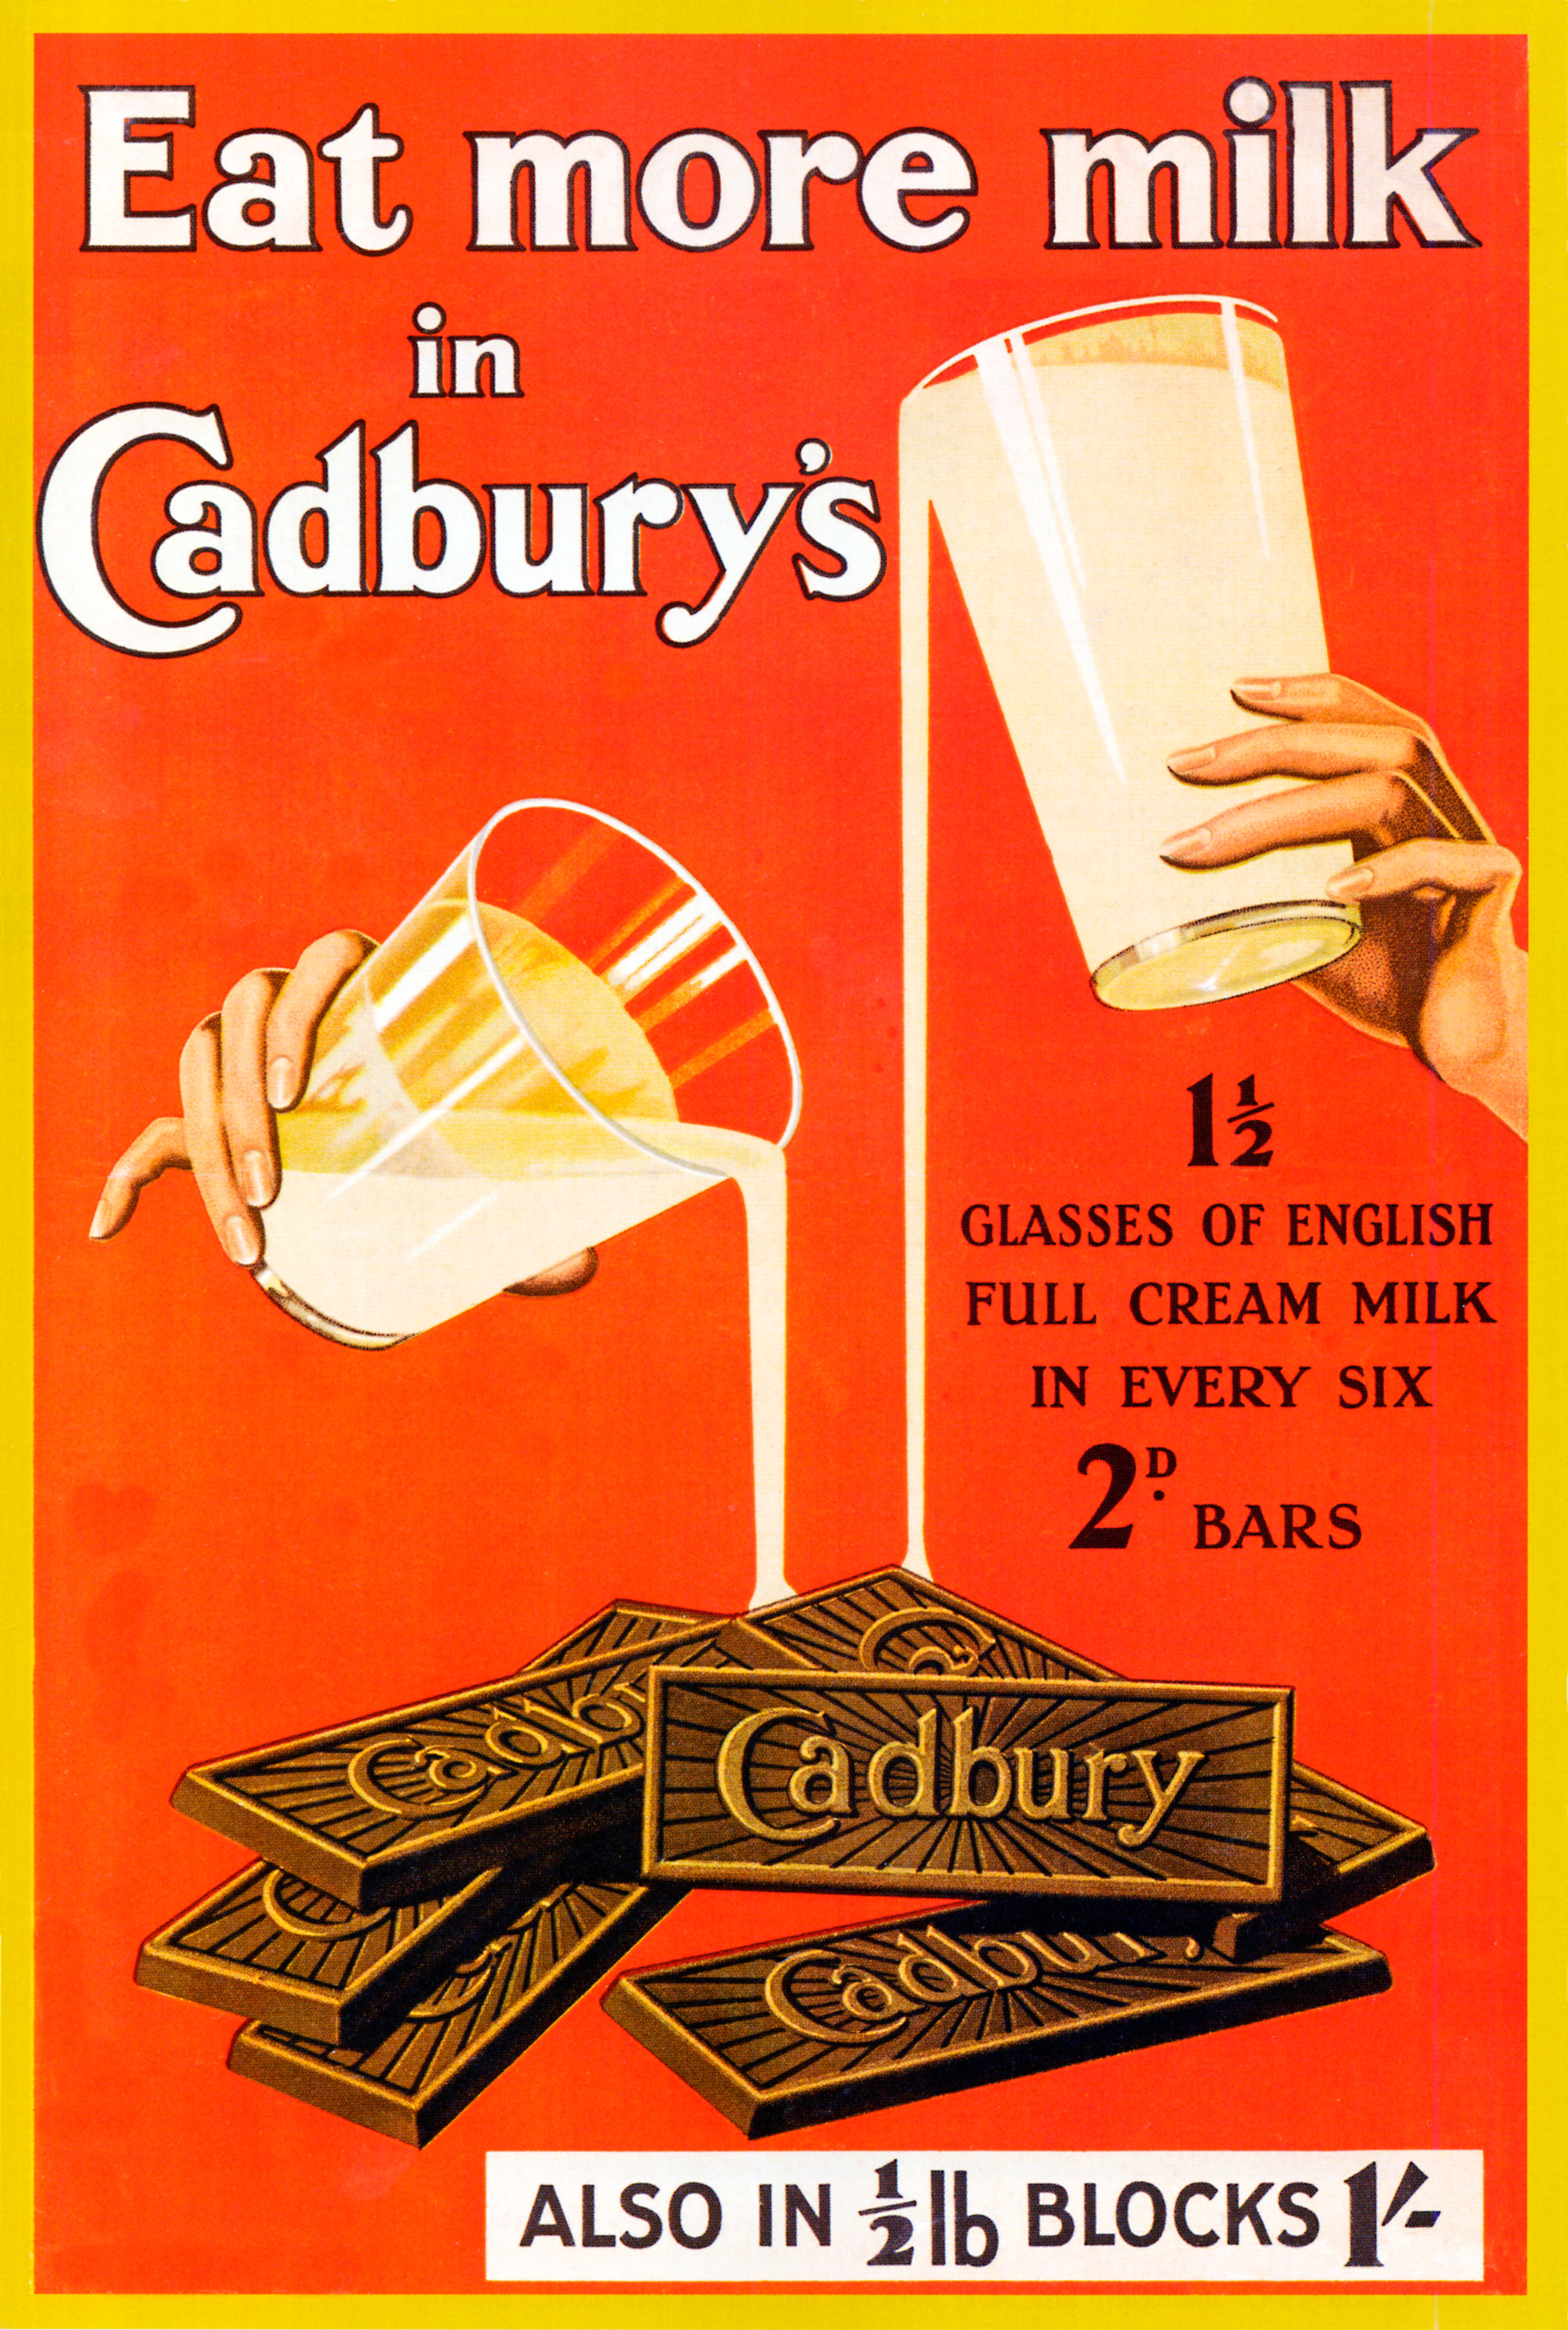 Cadburys Talent für Werbung reicht bis in die 200-jährige Geschichte des Unternehmens zurück